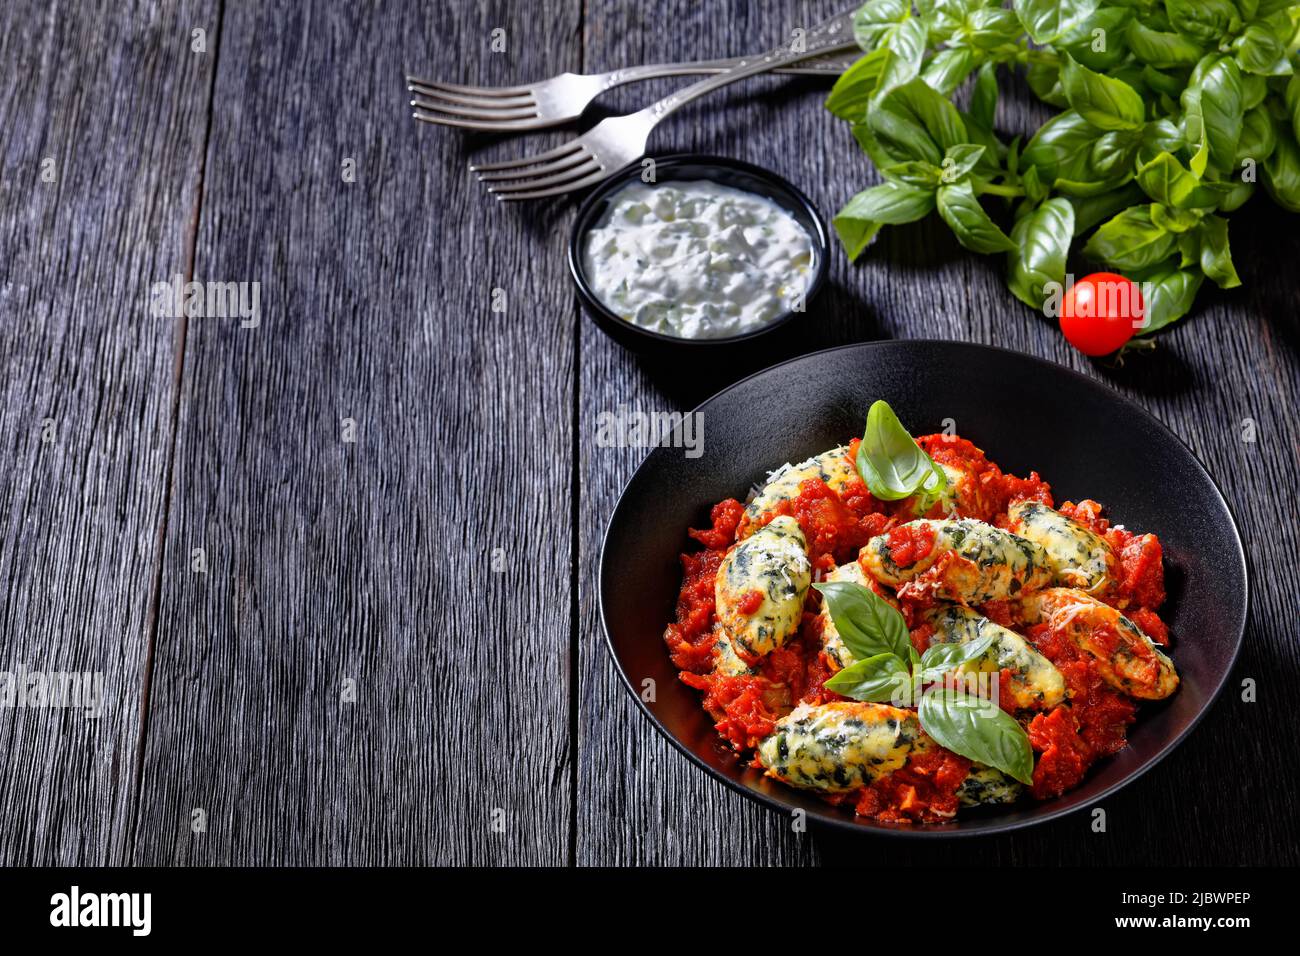 Boulettes de ricotta aux épinards italiens sauce tomate aux herbes et parmesan râpé dans un bol noir sur une table en bois sombre, vue horizontale Banque D'Images